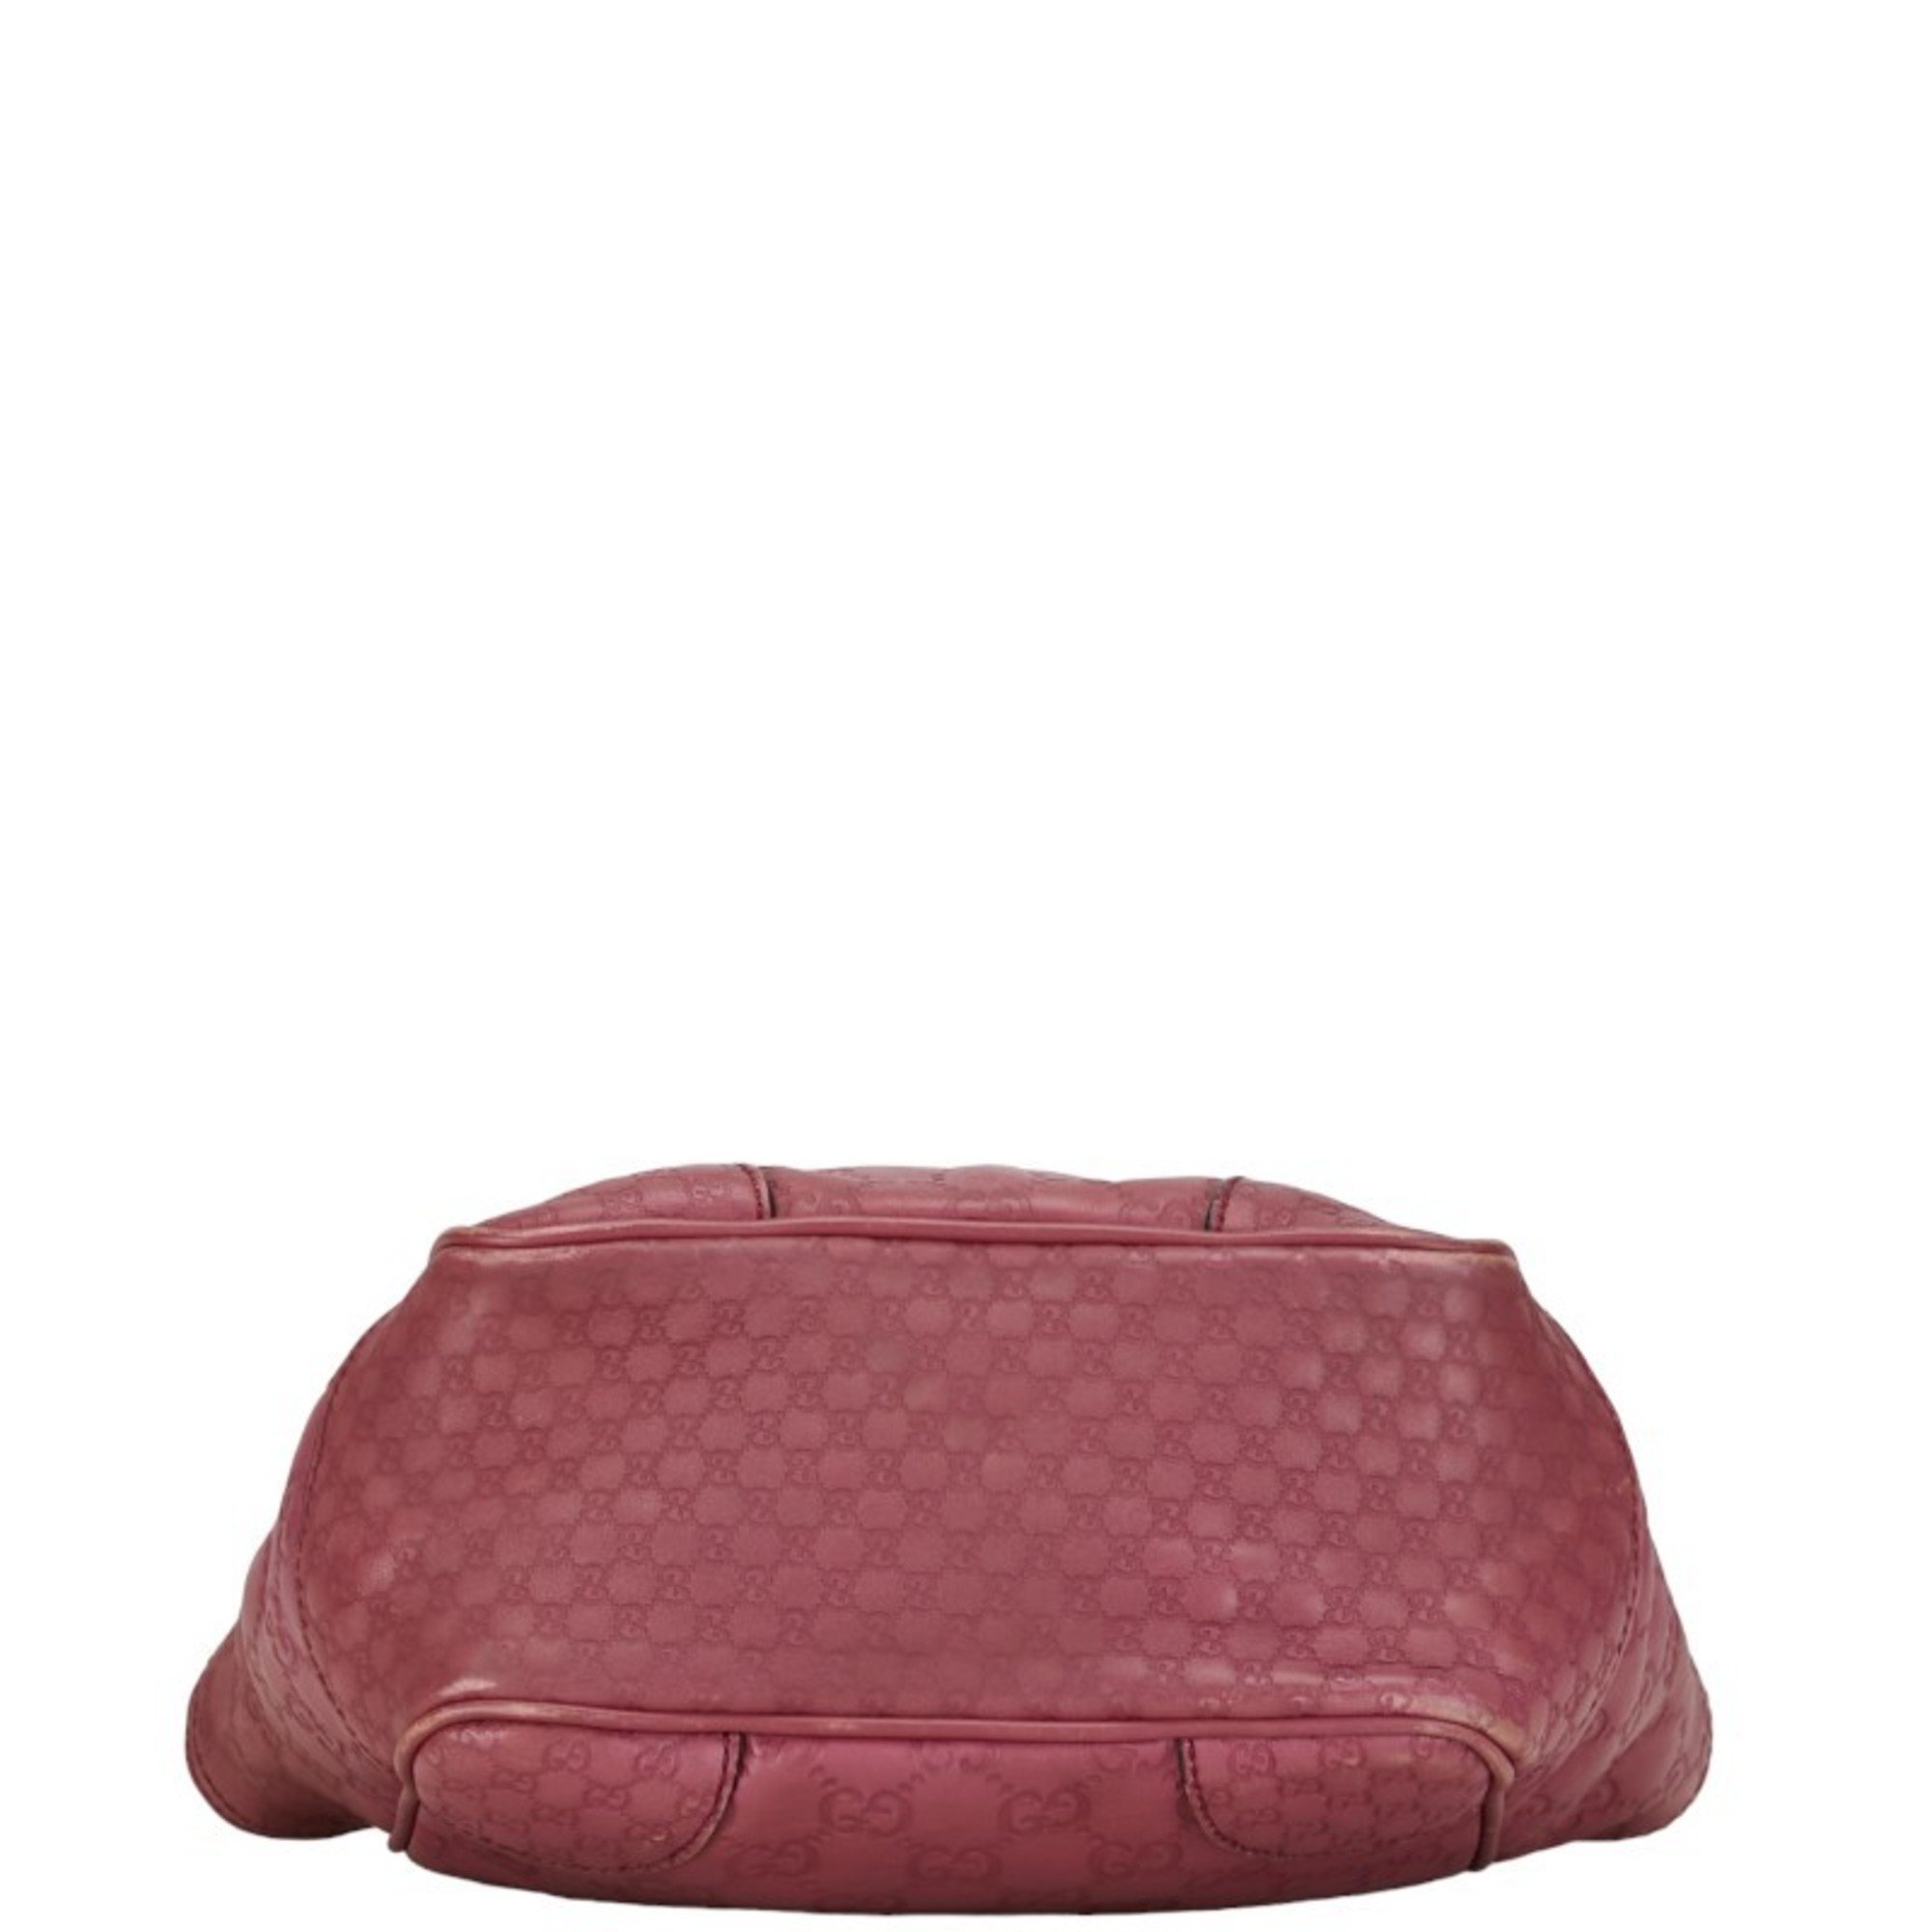 Gucci Guccissima Handbag Shoulder Bag 353121 Pink Leather Women's GUCCI